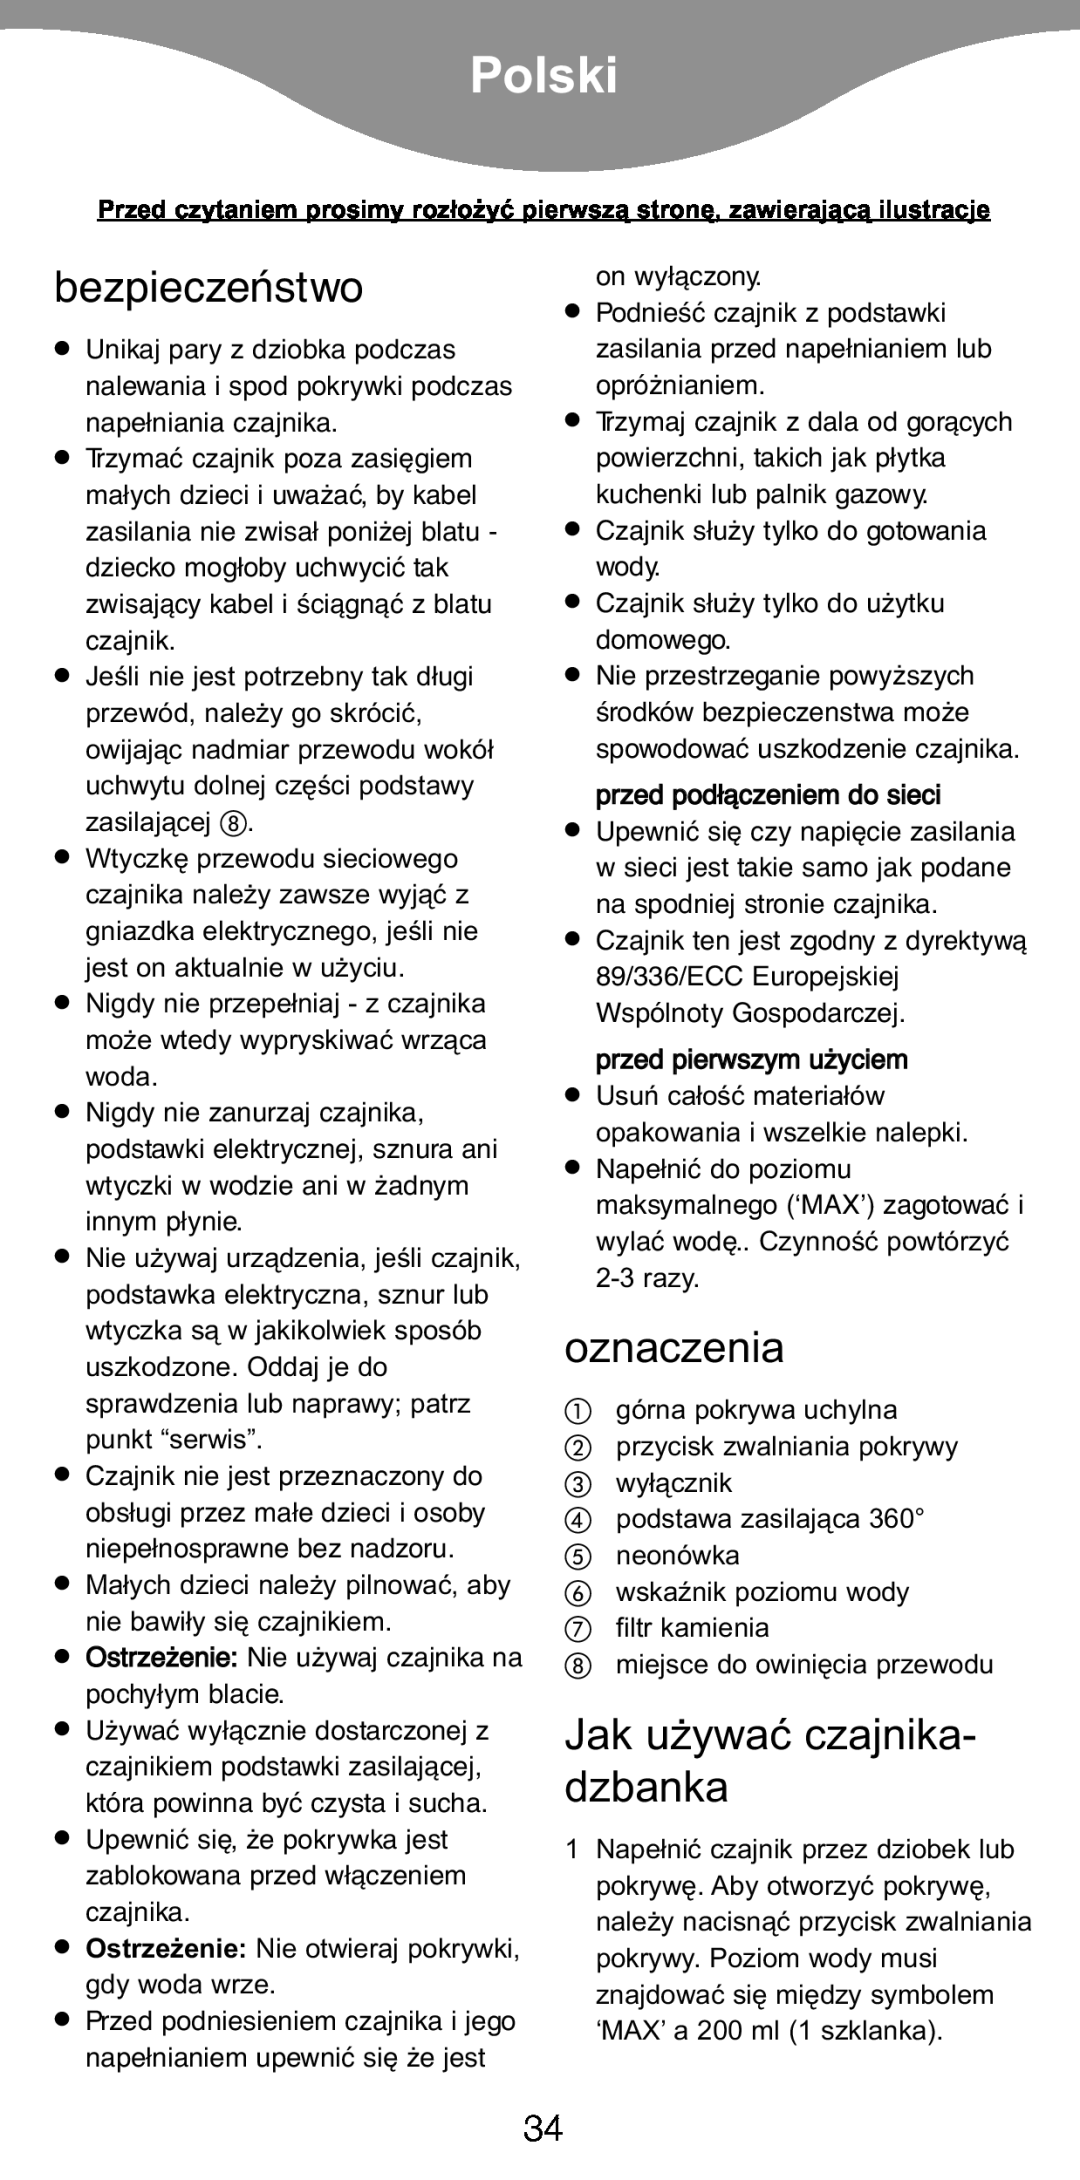 Kenwood JK940, JK840 manual Polski, bezpieczeństwo, oznaczenia, Jak u¯ywaç czajnika- dzbanka 